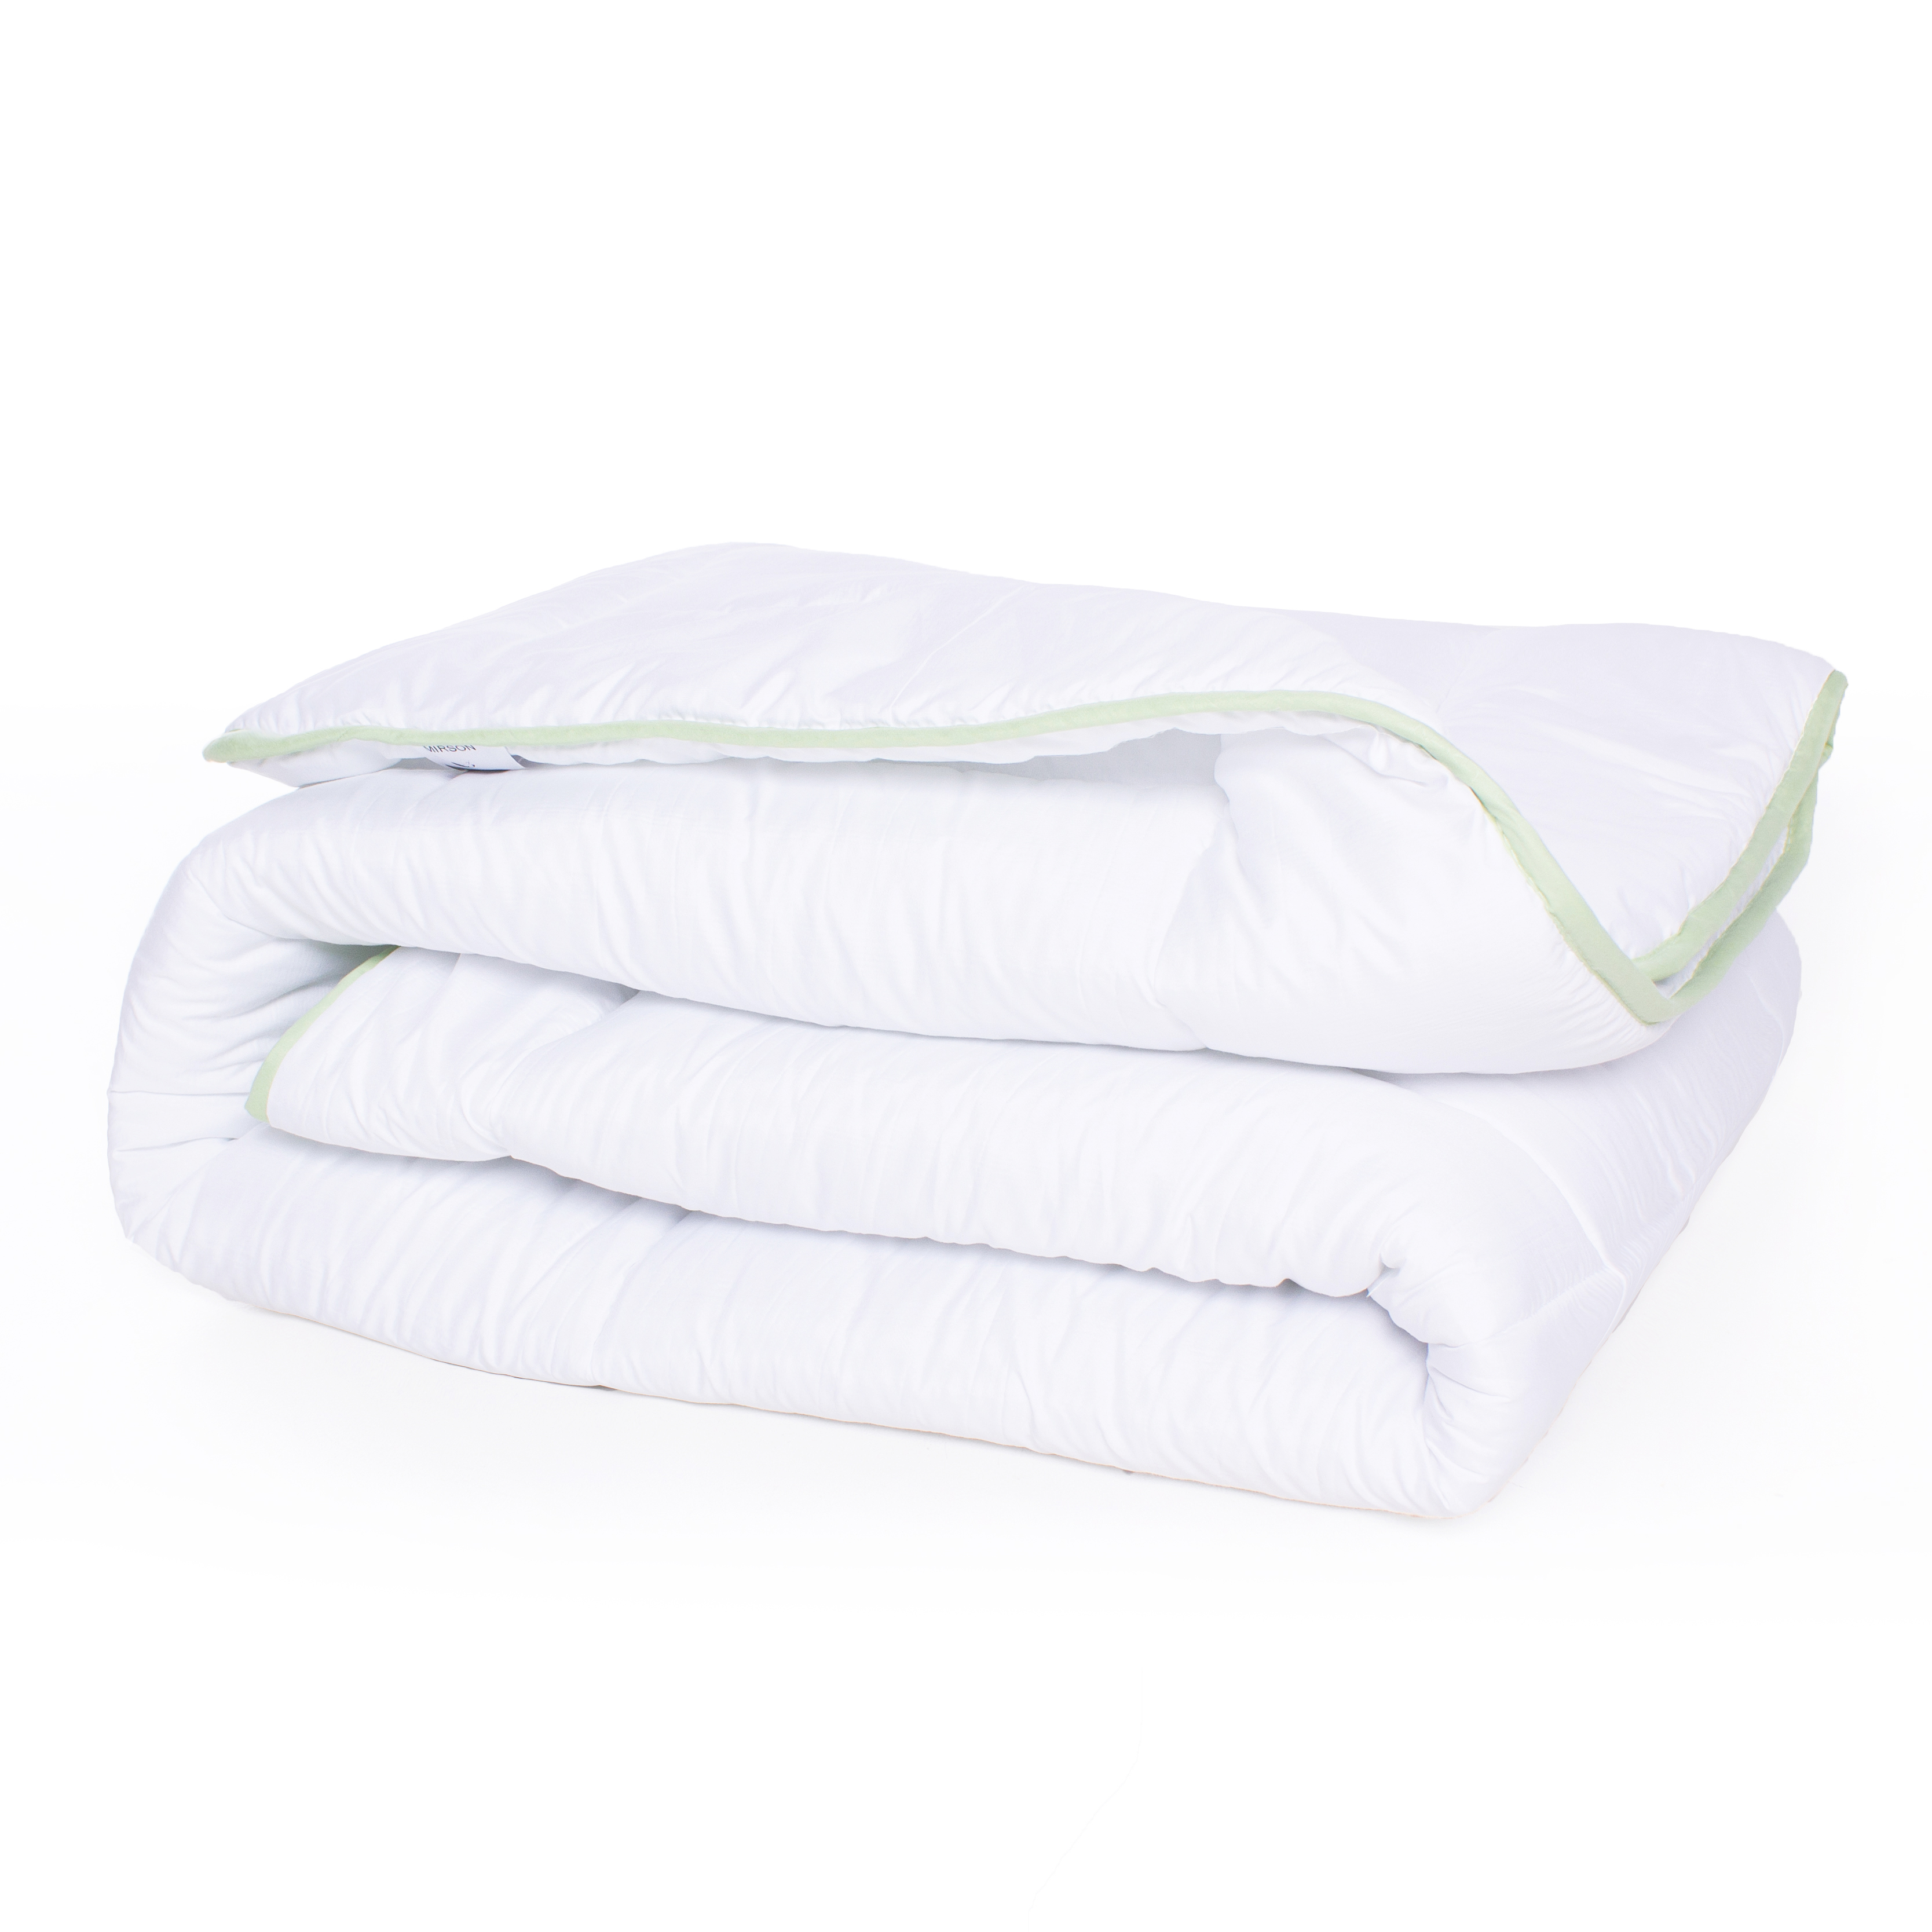 Одеяло антиаллергенное MirSon EcoSilk №003, зимнее, 172x205 см, белое (8062568) - фото 2